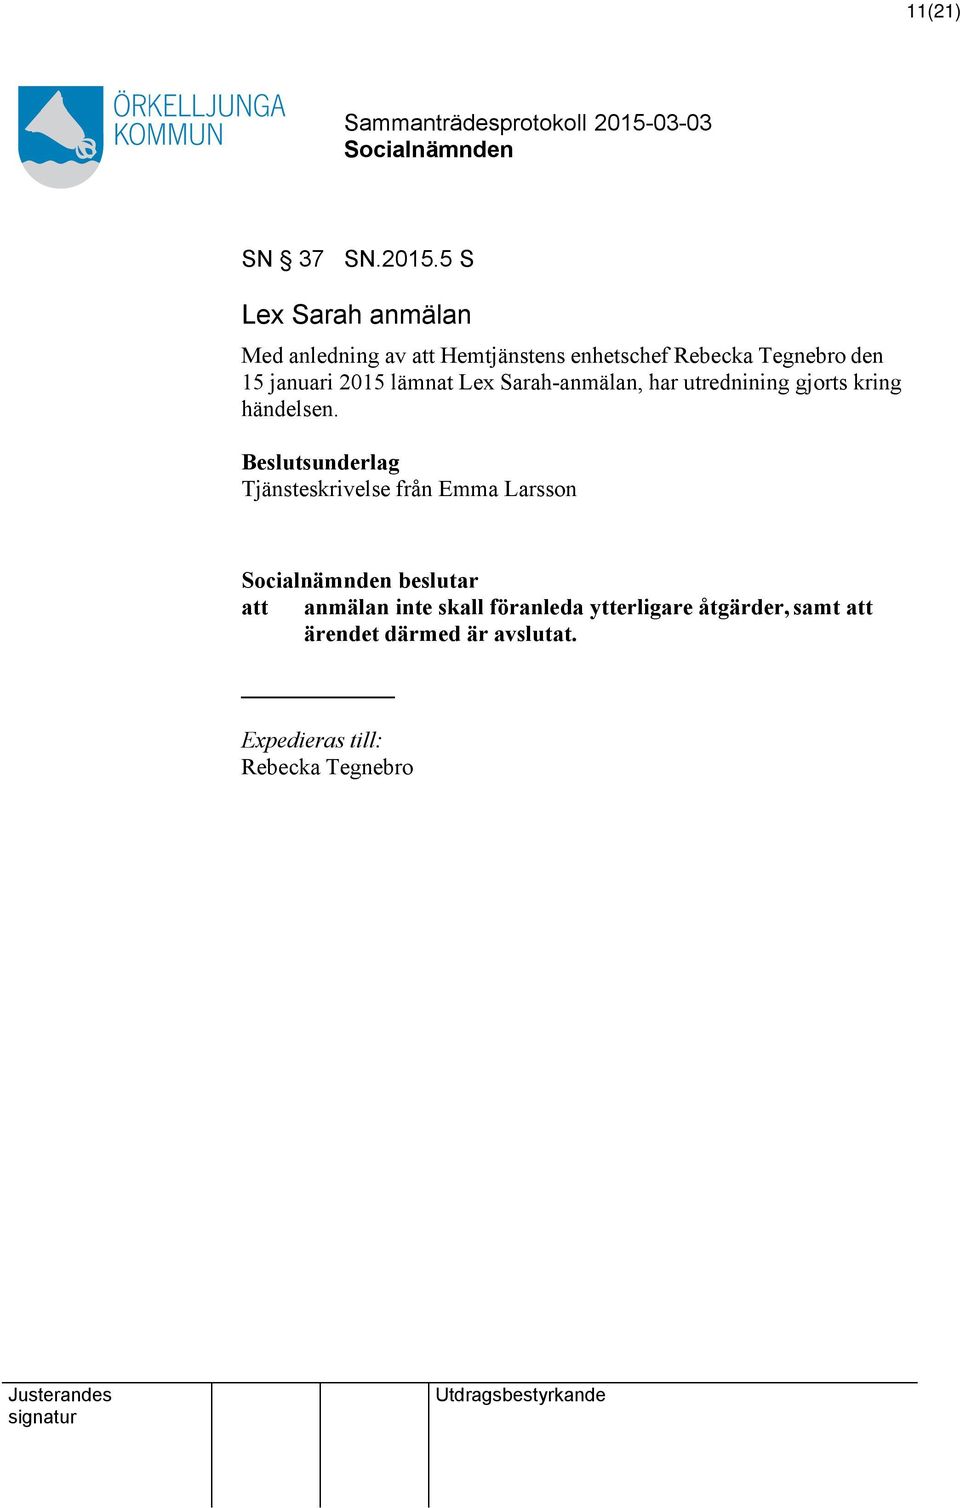 15 januari 2015 lämnat Lex Sarah-anmälan, har utrednining gjorts kring händelsen.